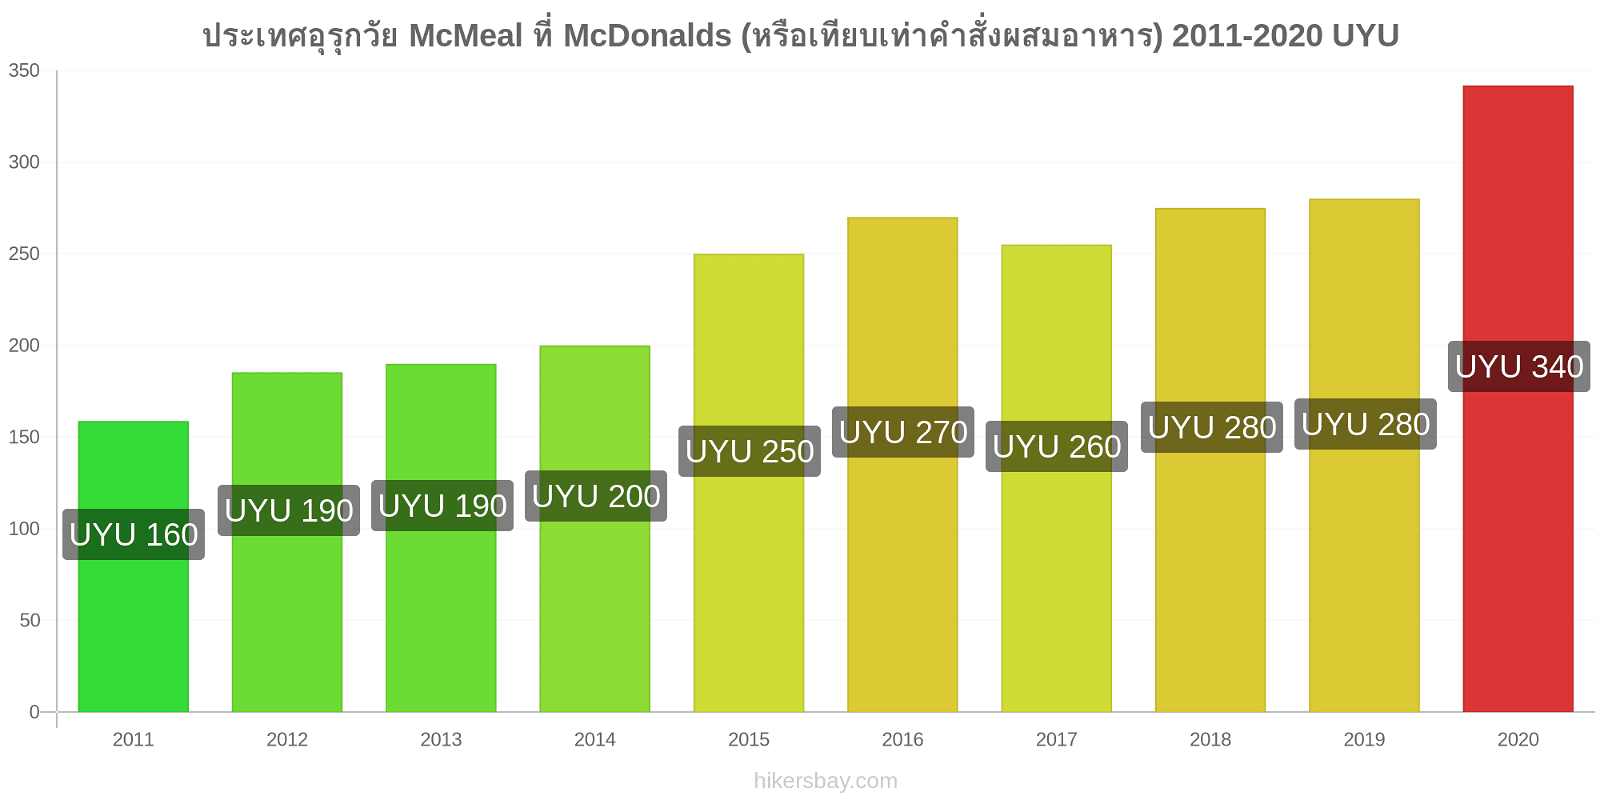 ประเทศอุรุกวัย การเปลี่ยนแปลงราคา McMeal ที่ McDonalds (หรือเทียบเท่าคำสั่งผสมอาหาร) hikersbay.com